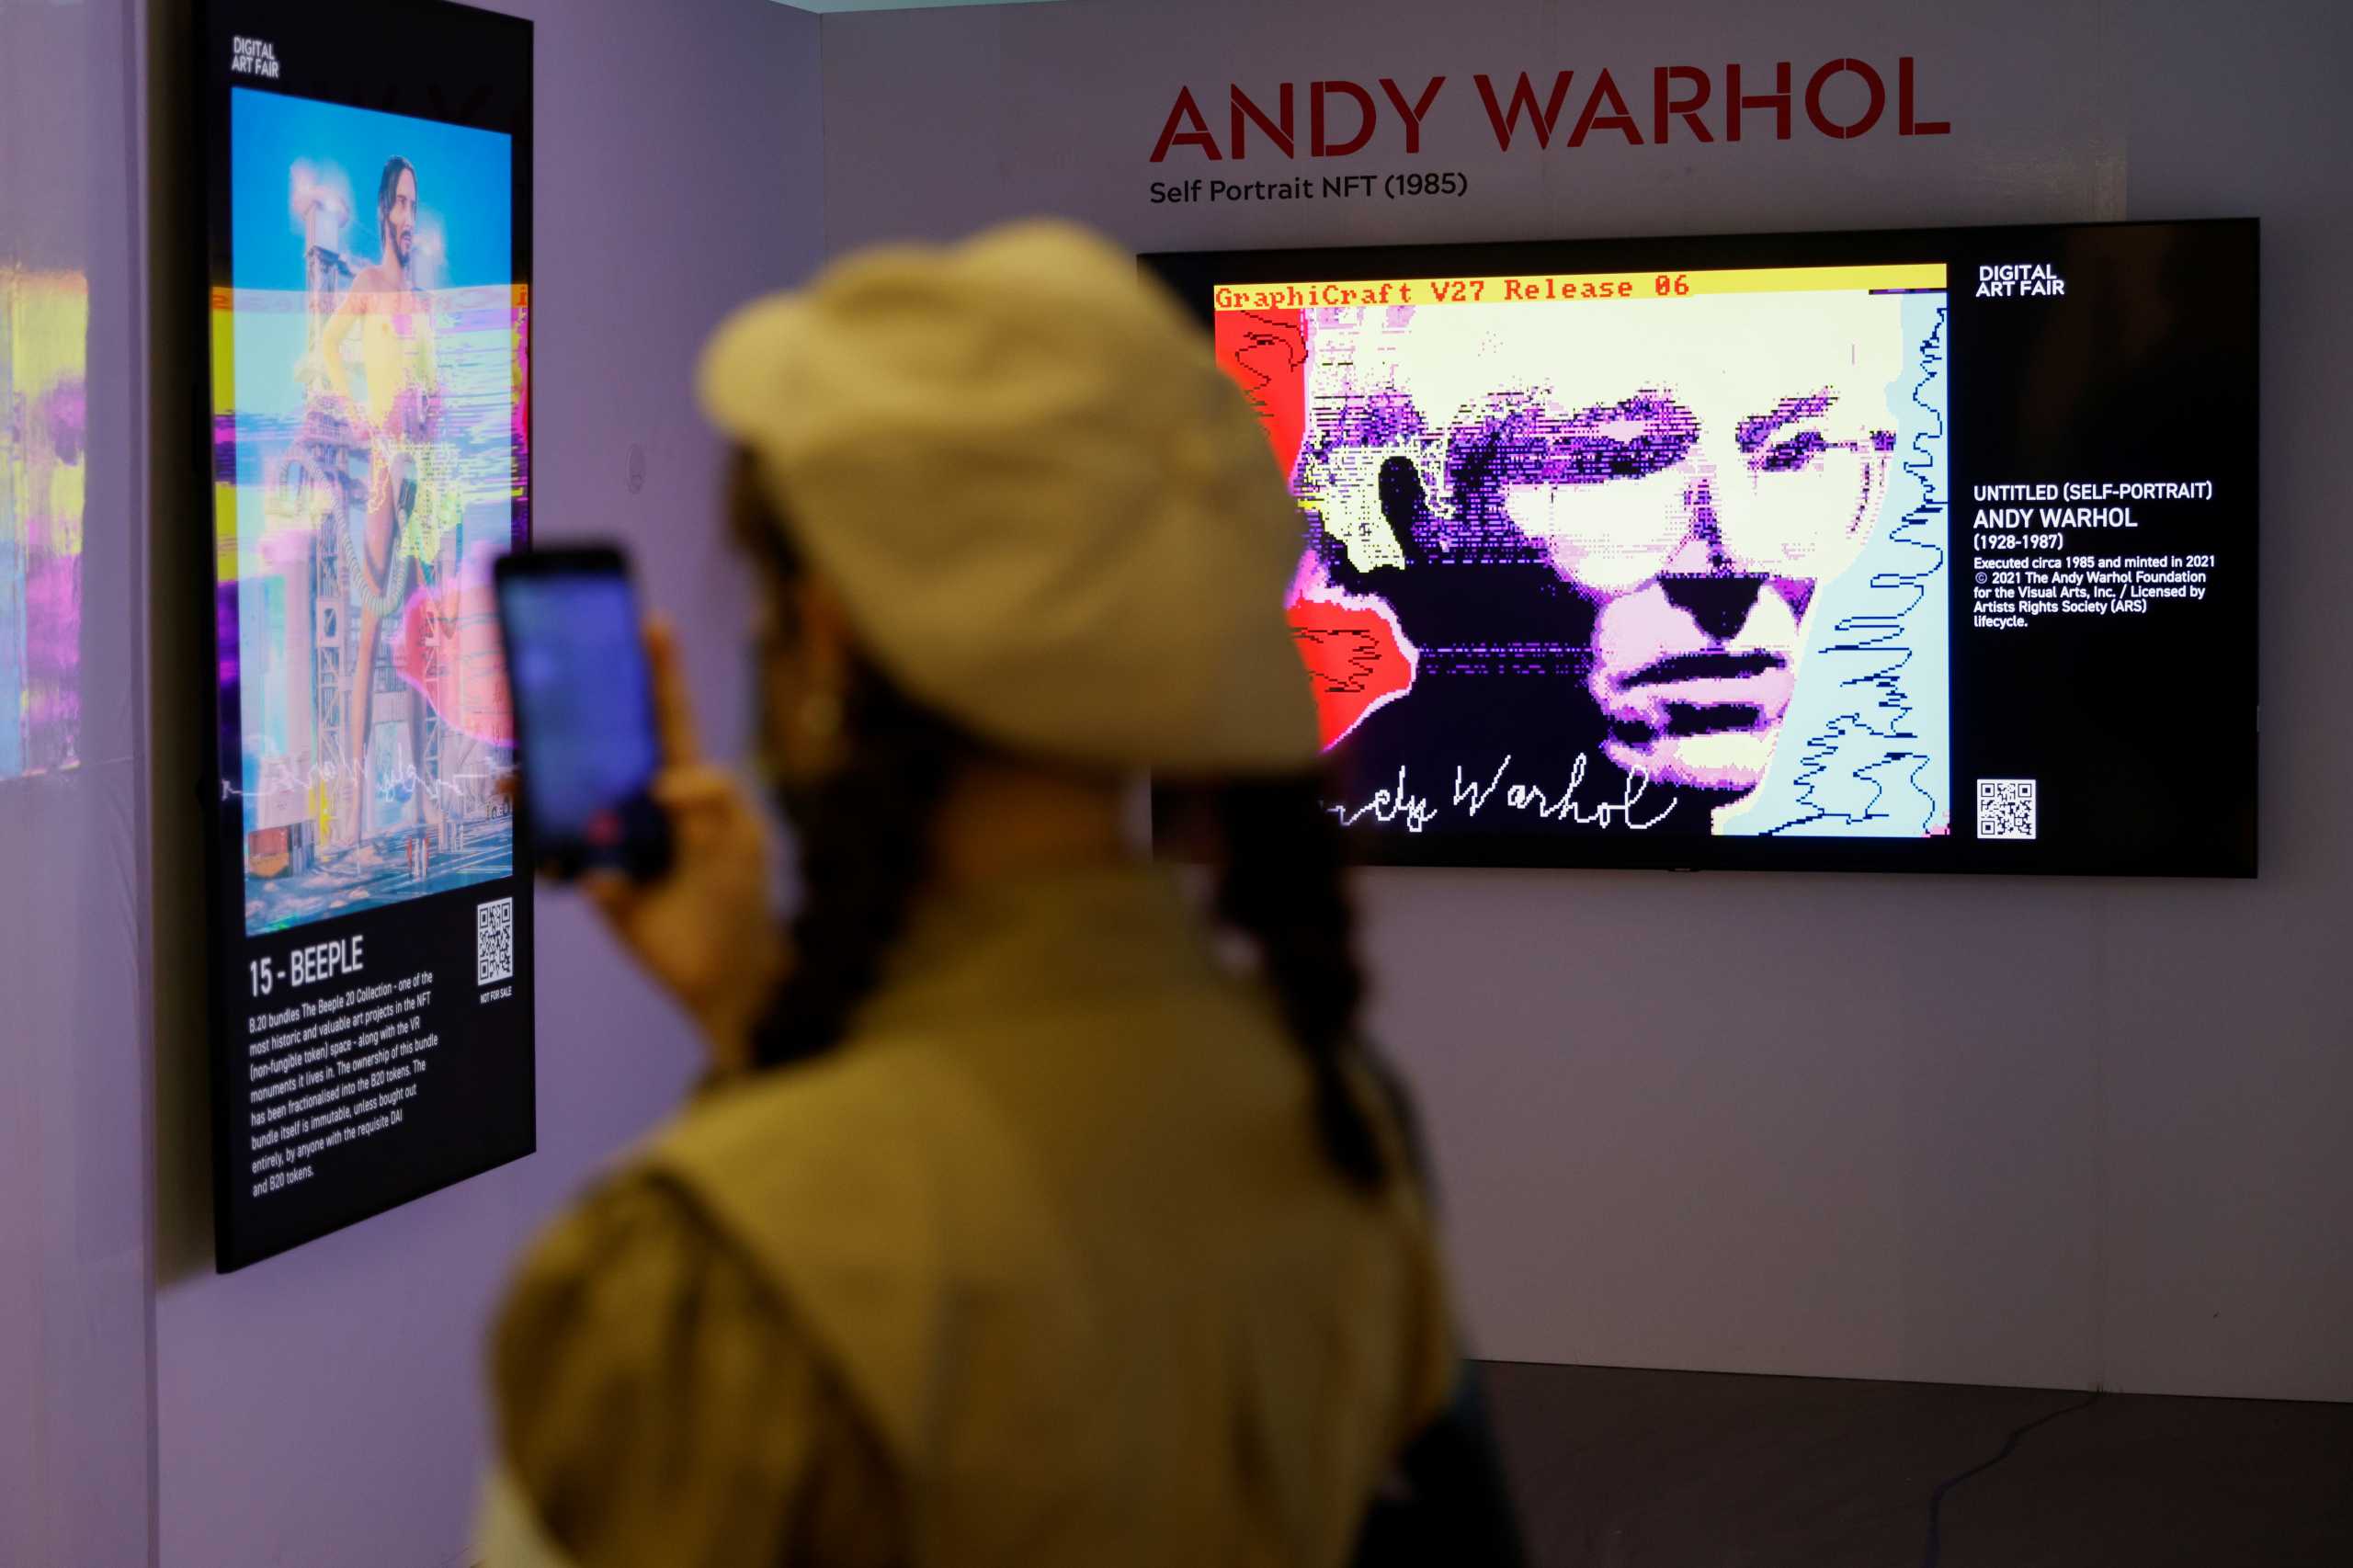 Άντι Γουόρχολ: Νέες φωτογραφίες του καλλιτέχνη αποκαλύπτονται σε έκθεση στη Νέα Υόρκη